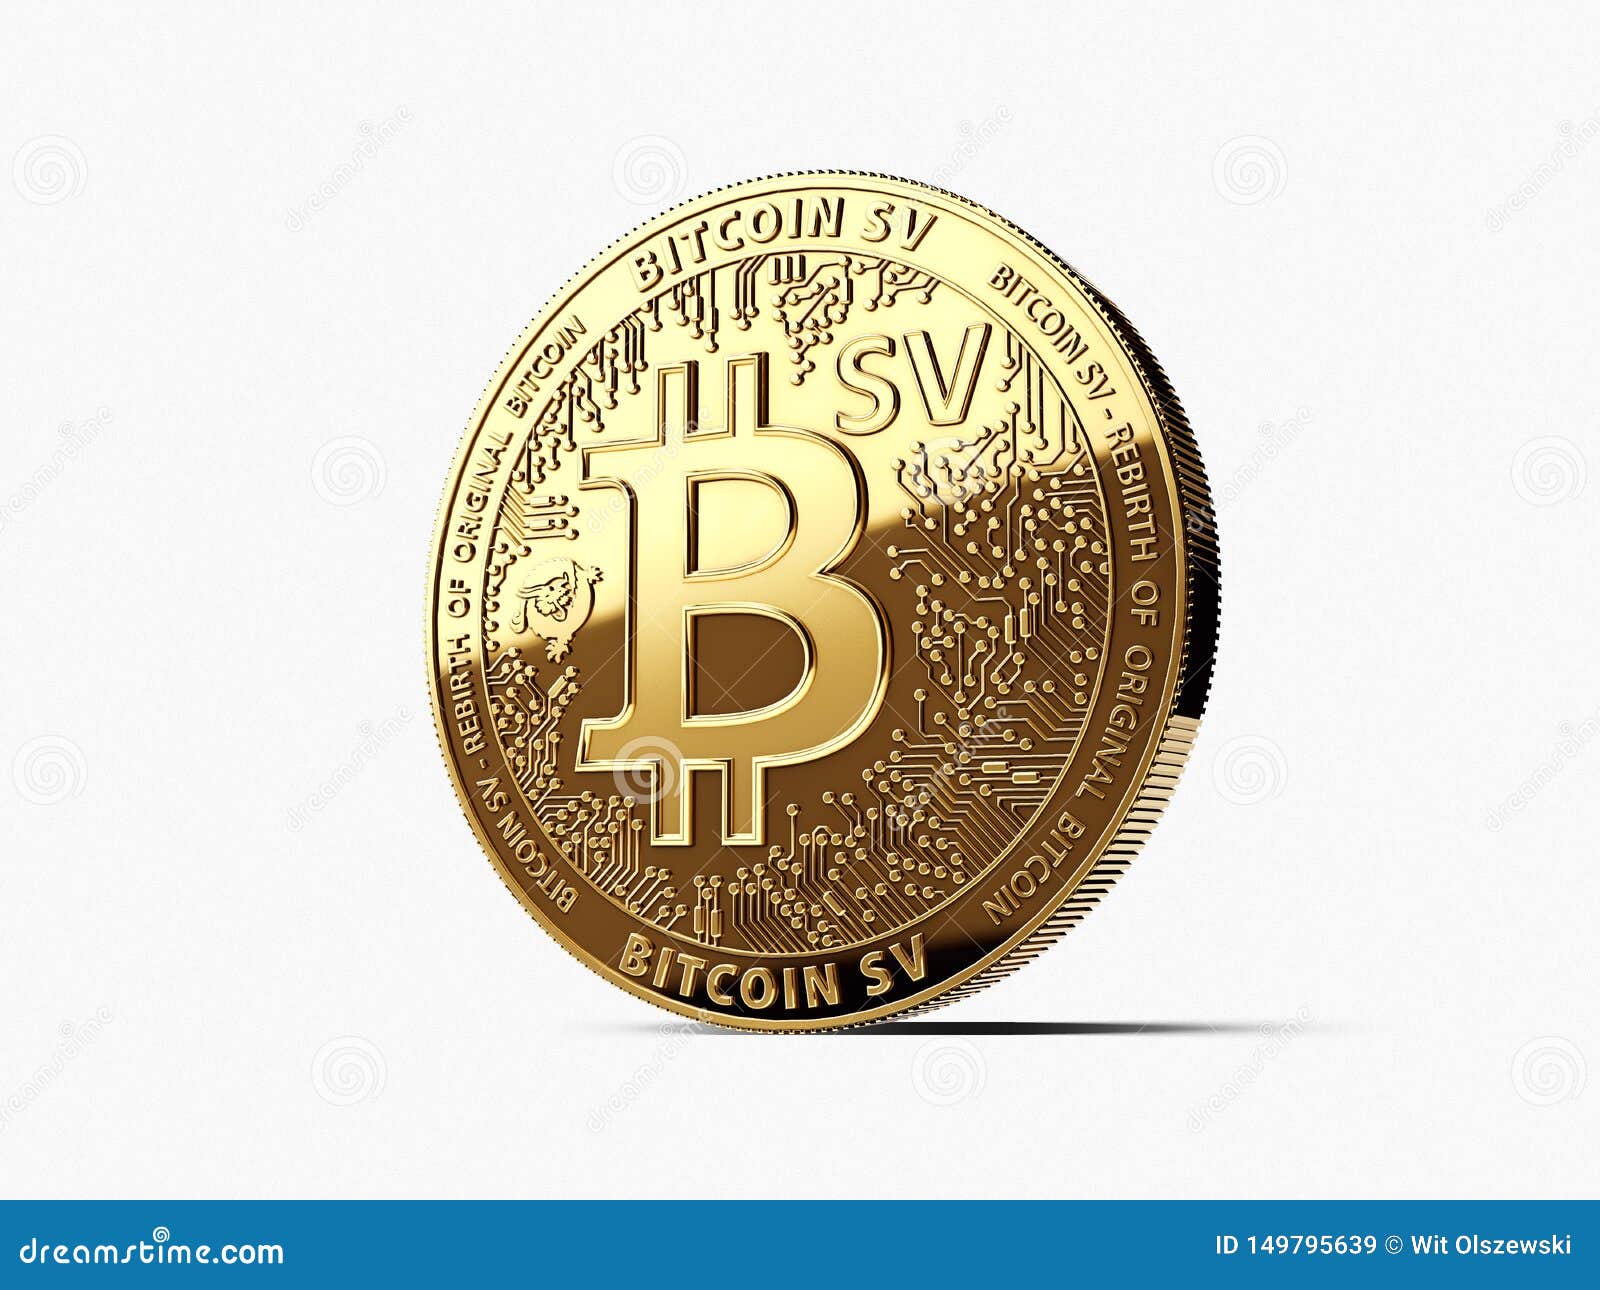 bitcoin bitcoin sv